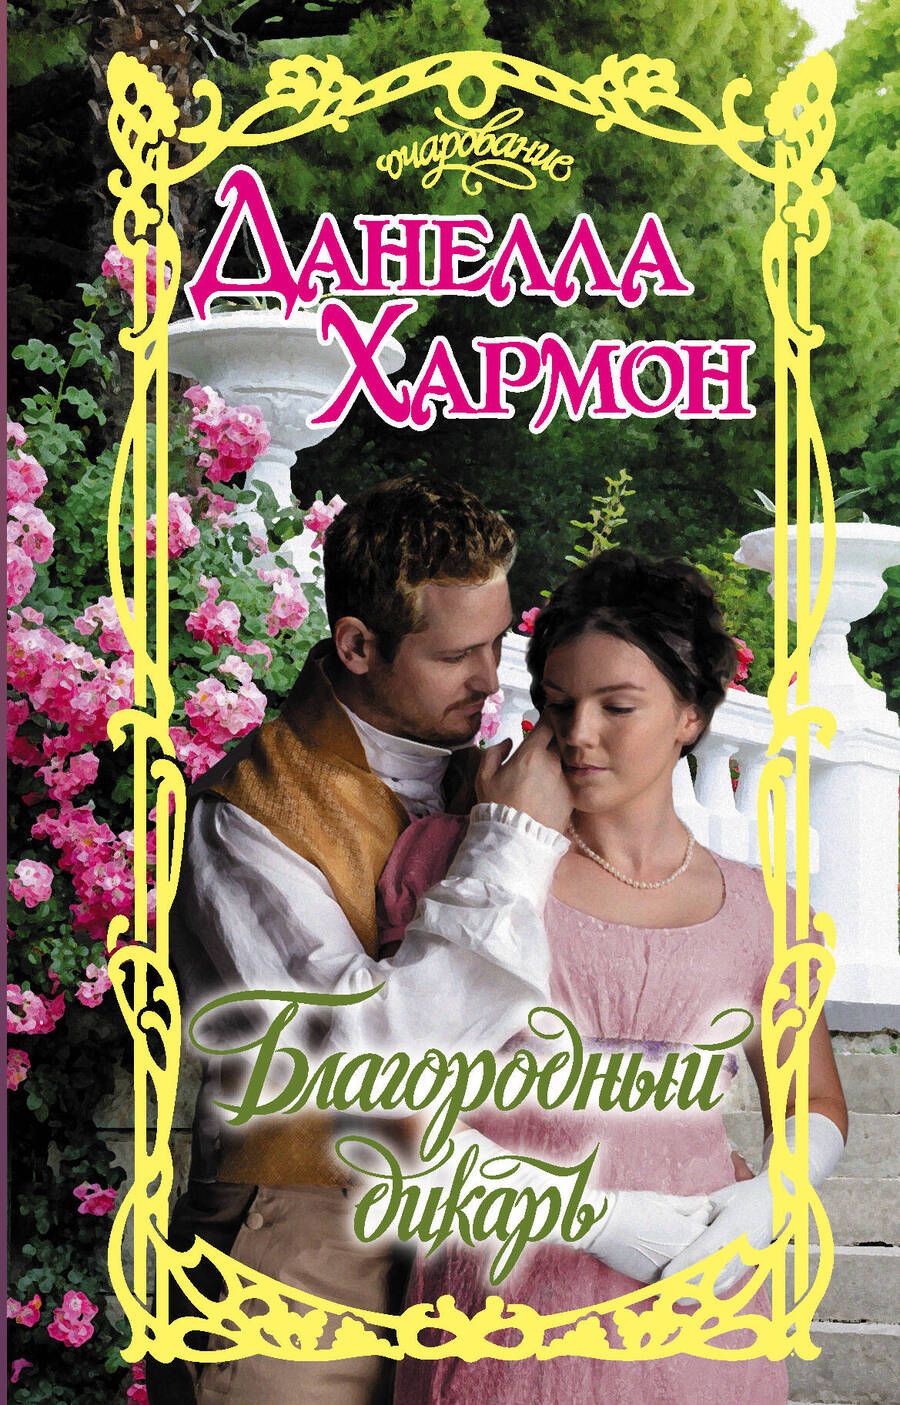 Обложка книги "Данелла Хармон: Благородный дикарь"